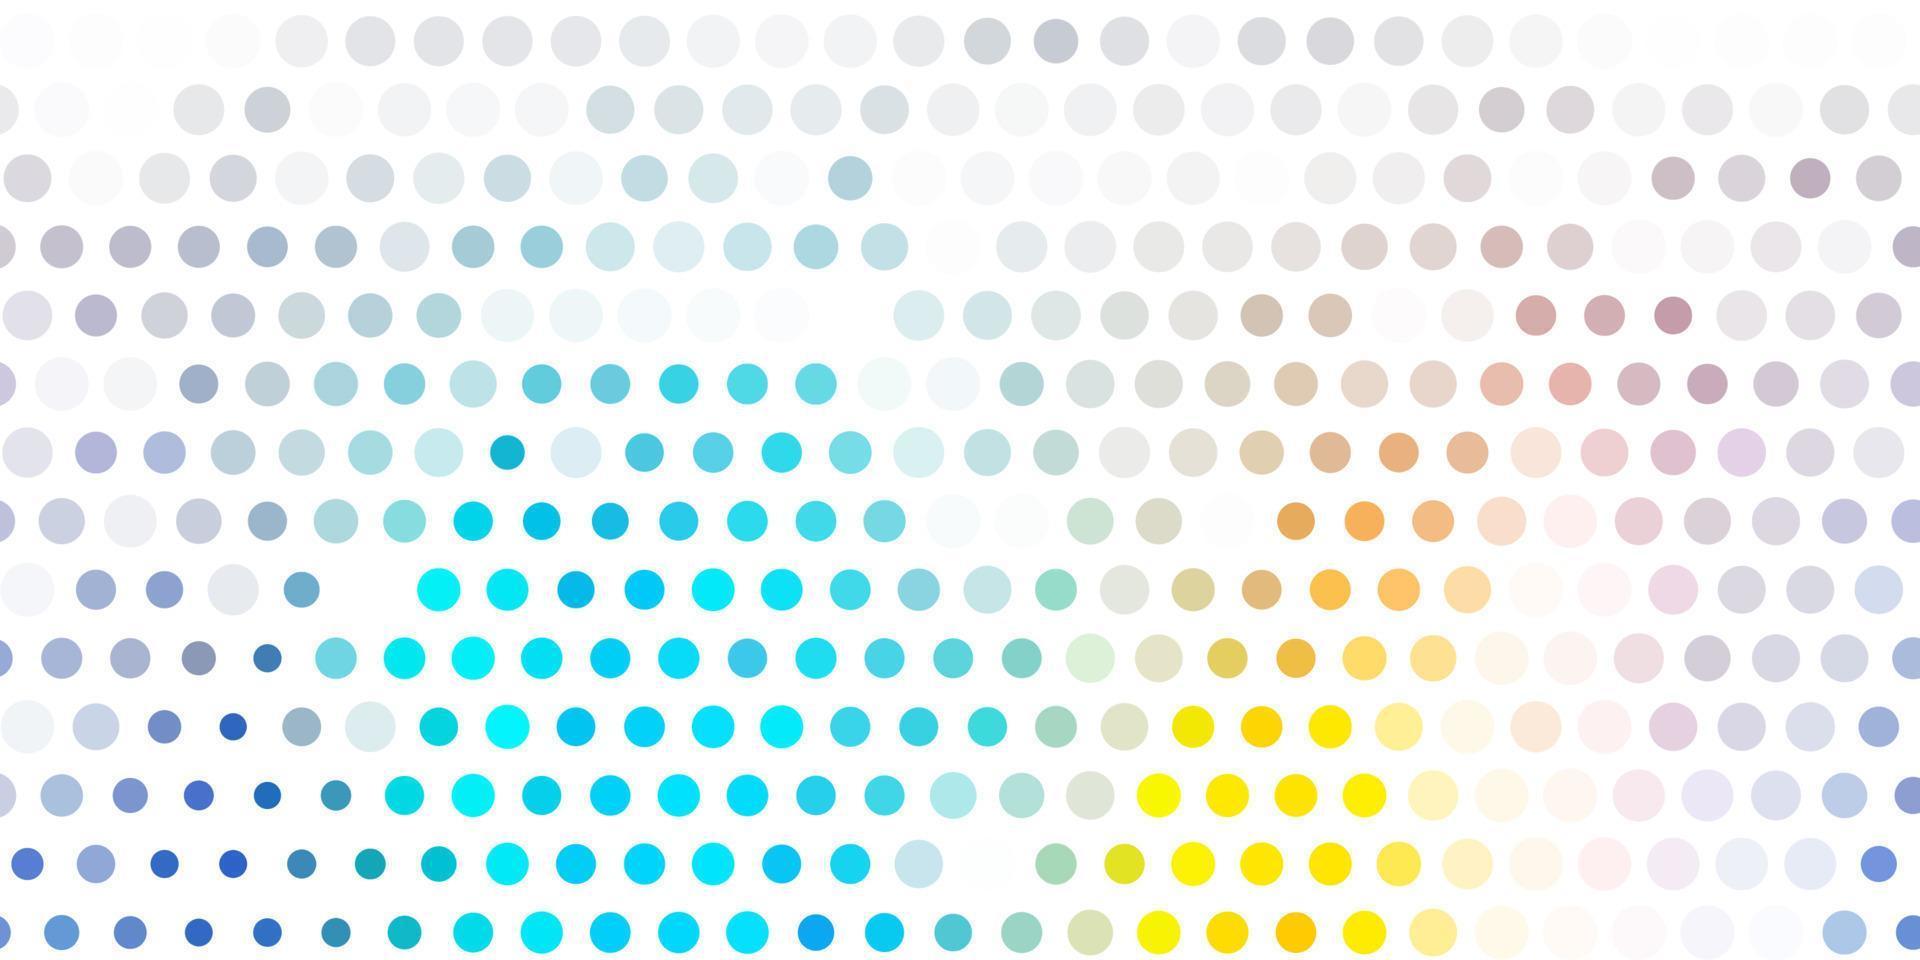 padrão de vetor azul e amarelo claro com esferas.